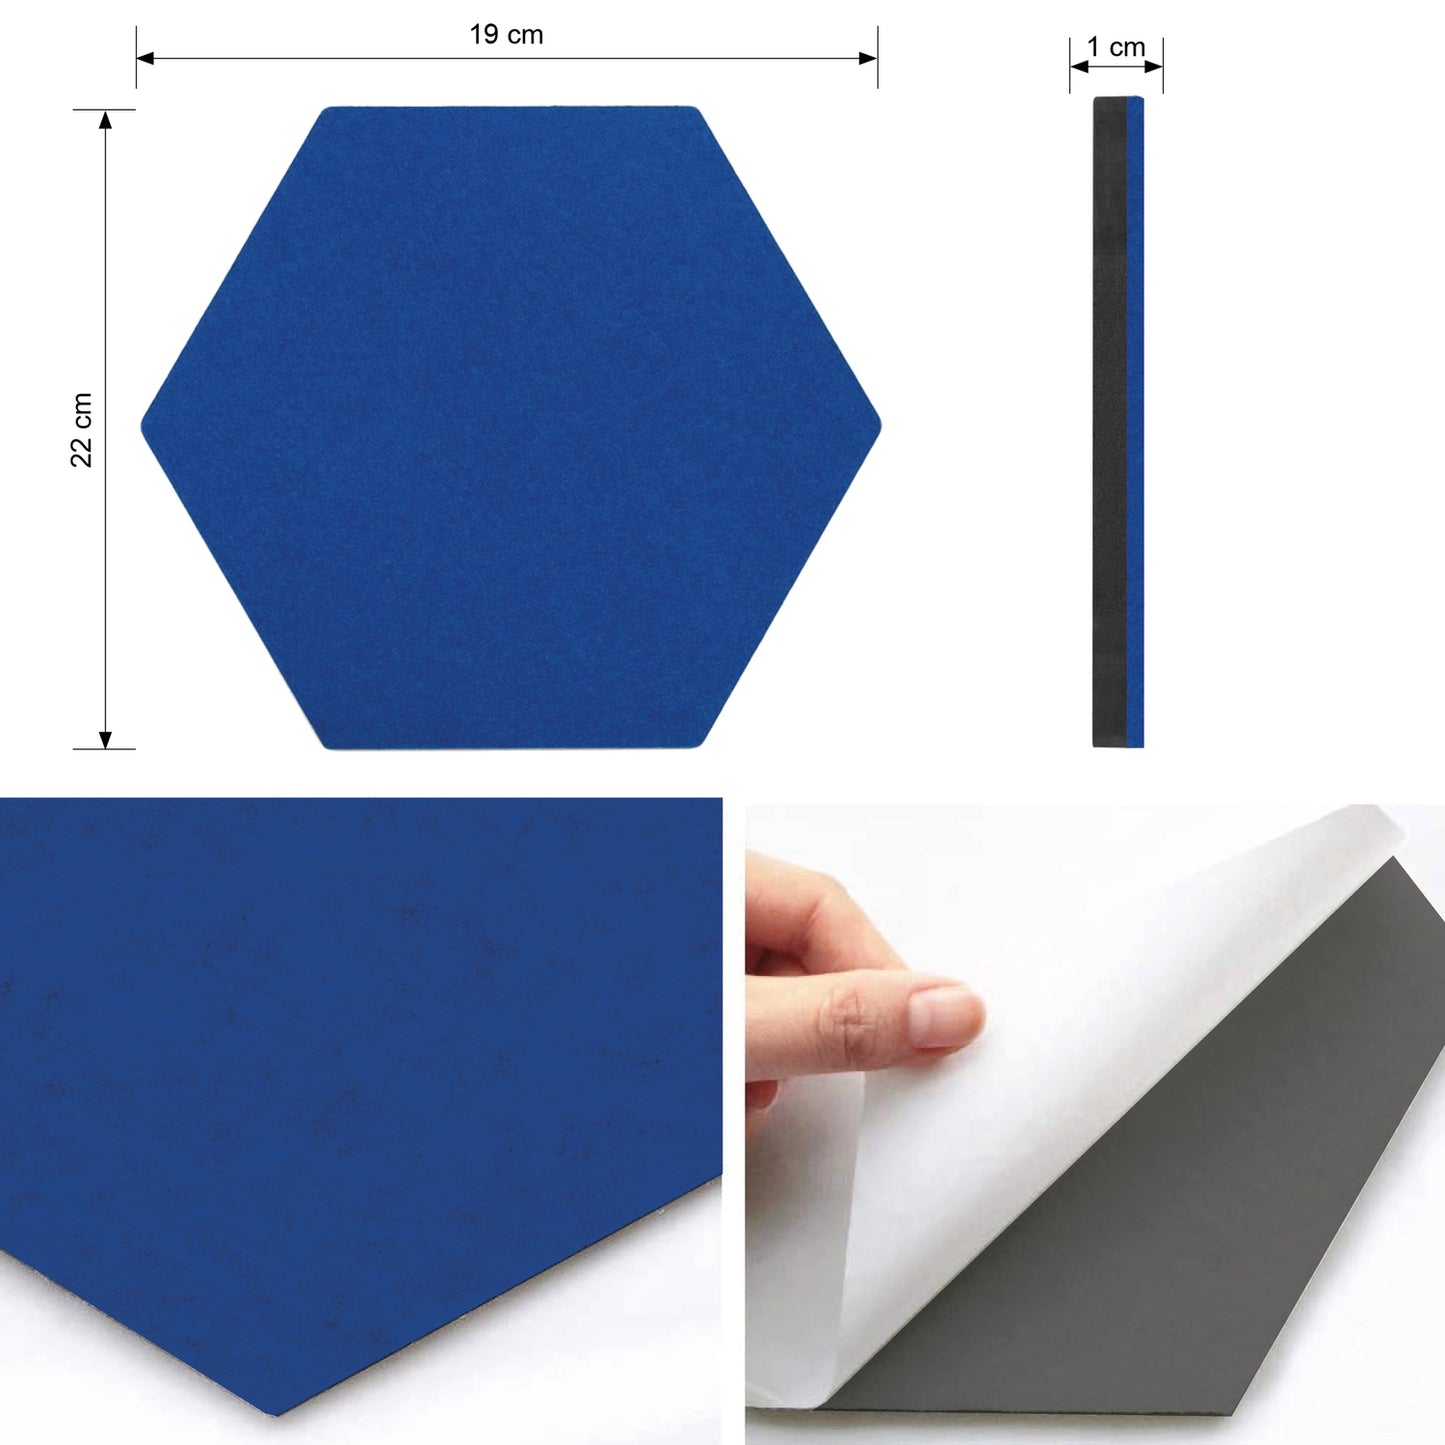 Zelfklevend vilten prikbord (set van 3) - Hexagon/blauw